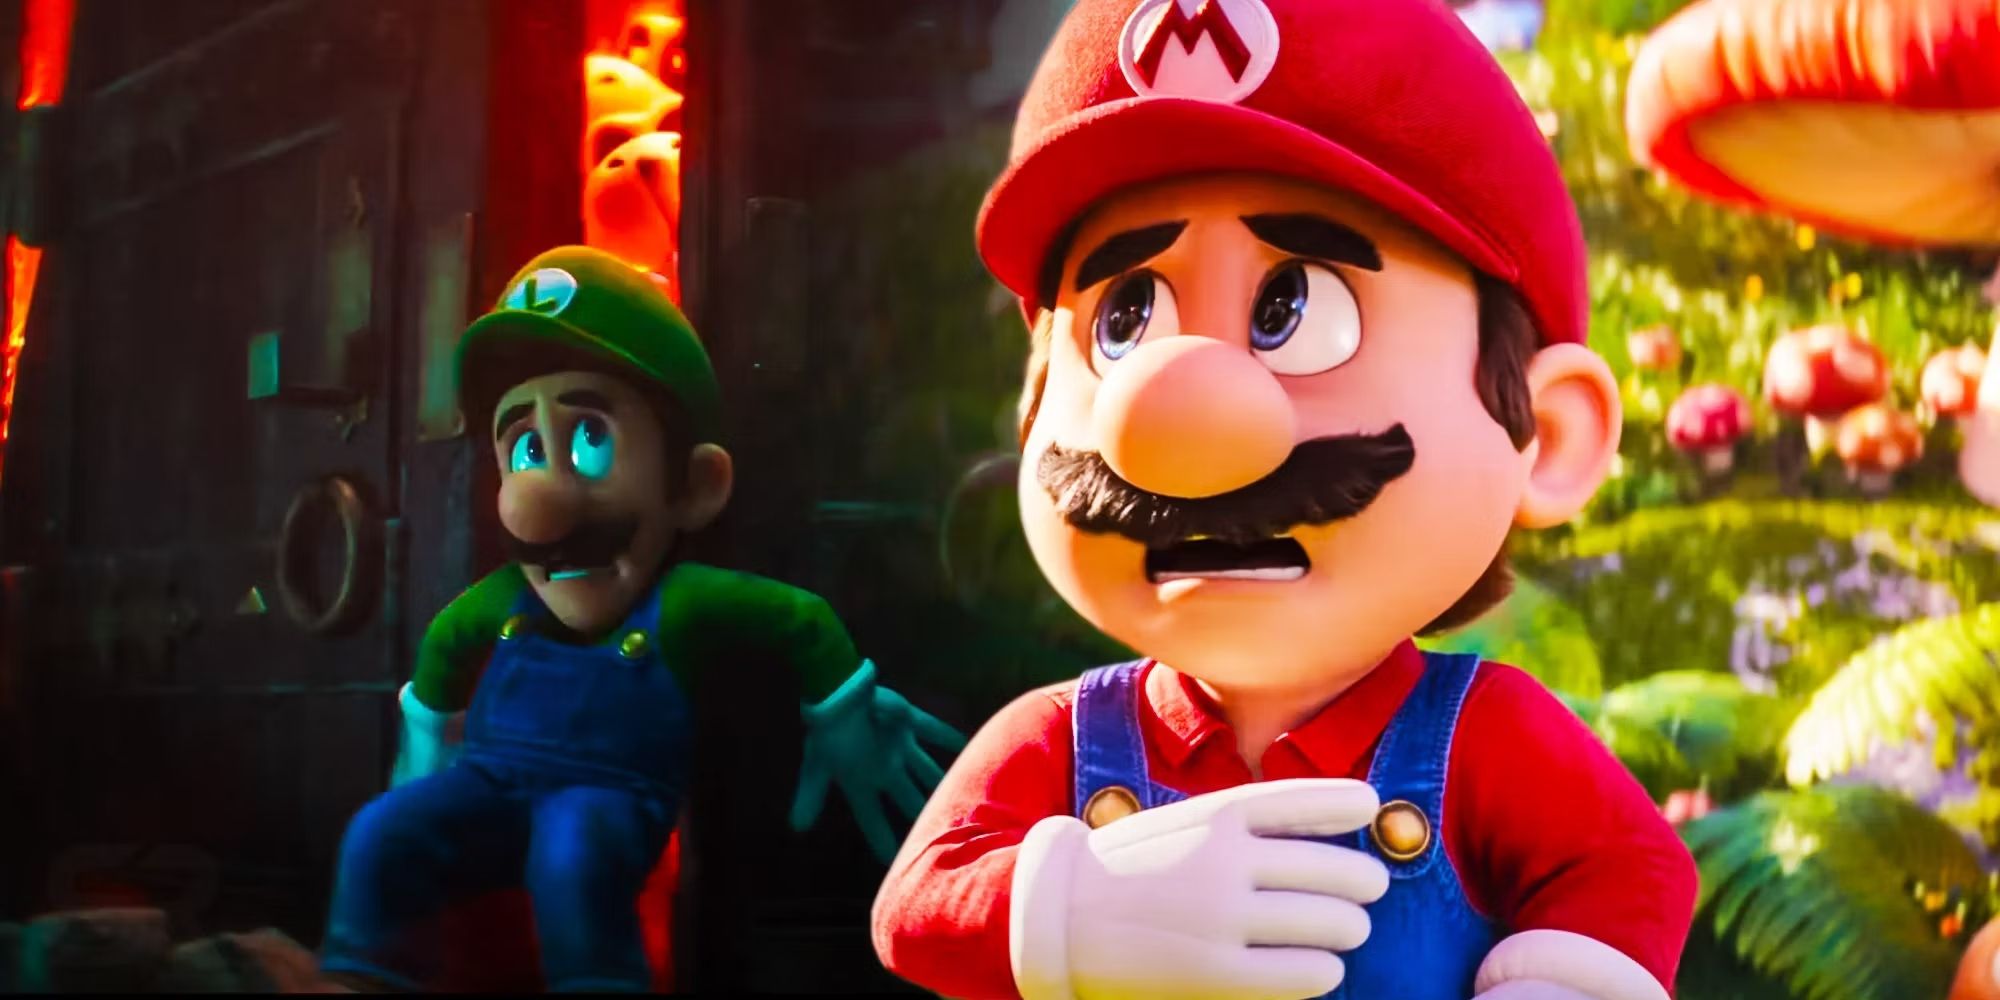 Super-Mario-Bros-Luigi-scared